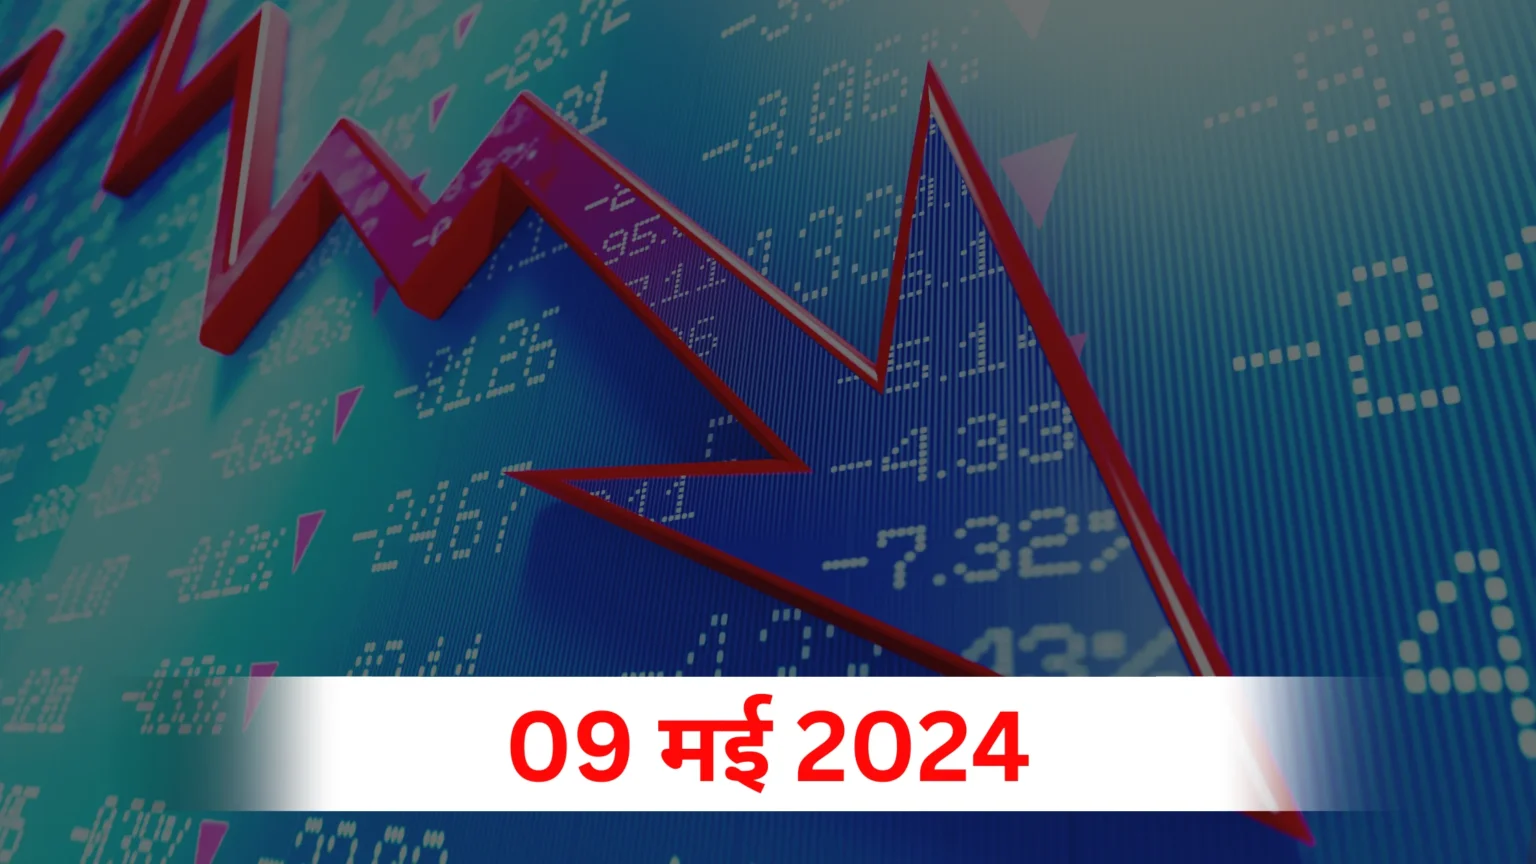 9-may-2024-share-market